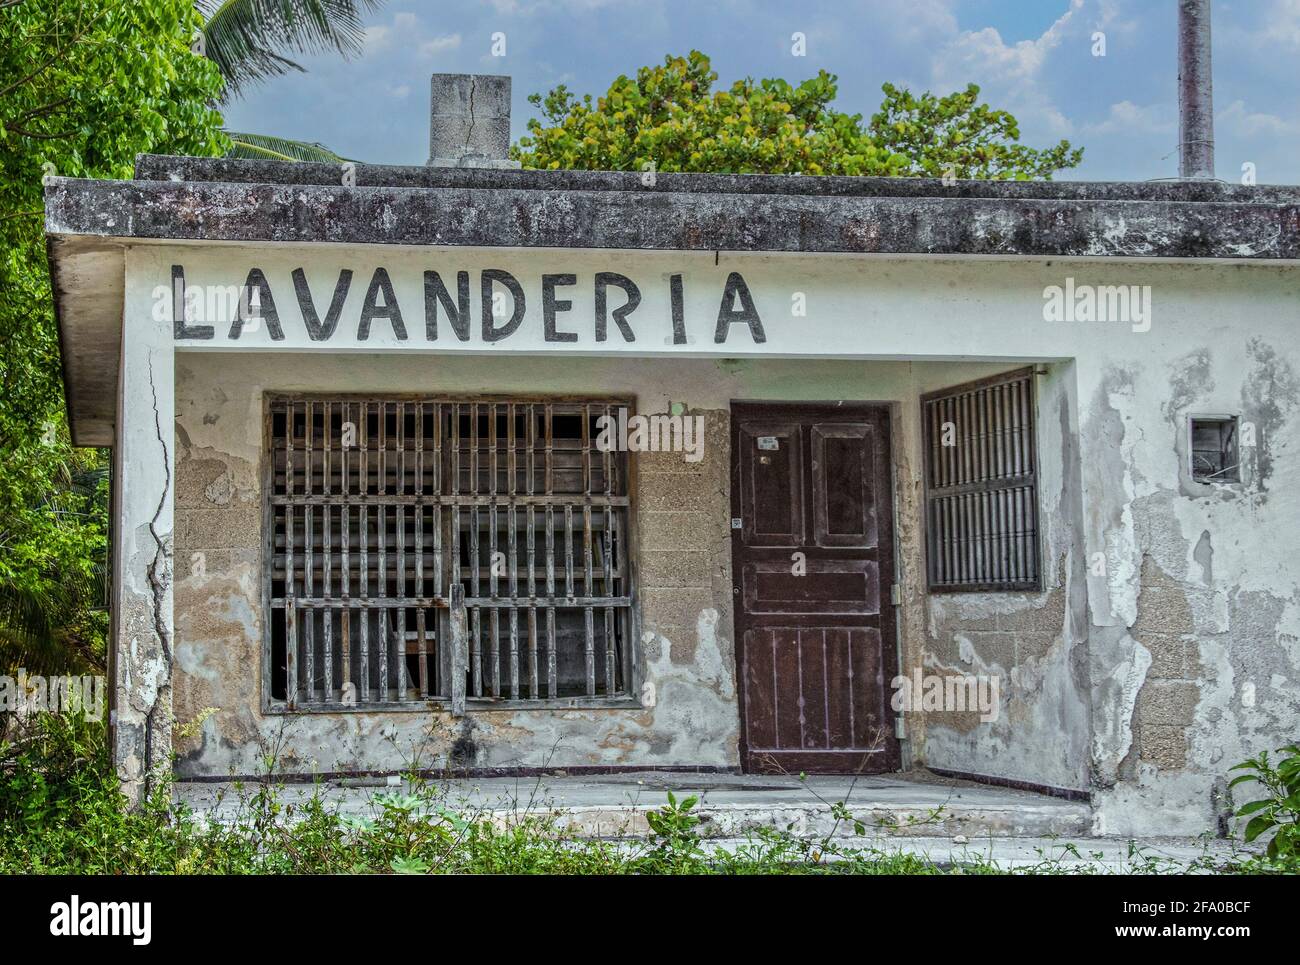 Mexikanischer Landromat oder Lavanderia in grungigem Altbau mit Stuck Von Betonblöcken und Holzstangen an Fenstern fallen - Unkraut wächst überall um ein Stockfoto